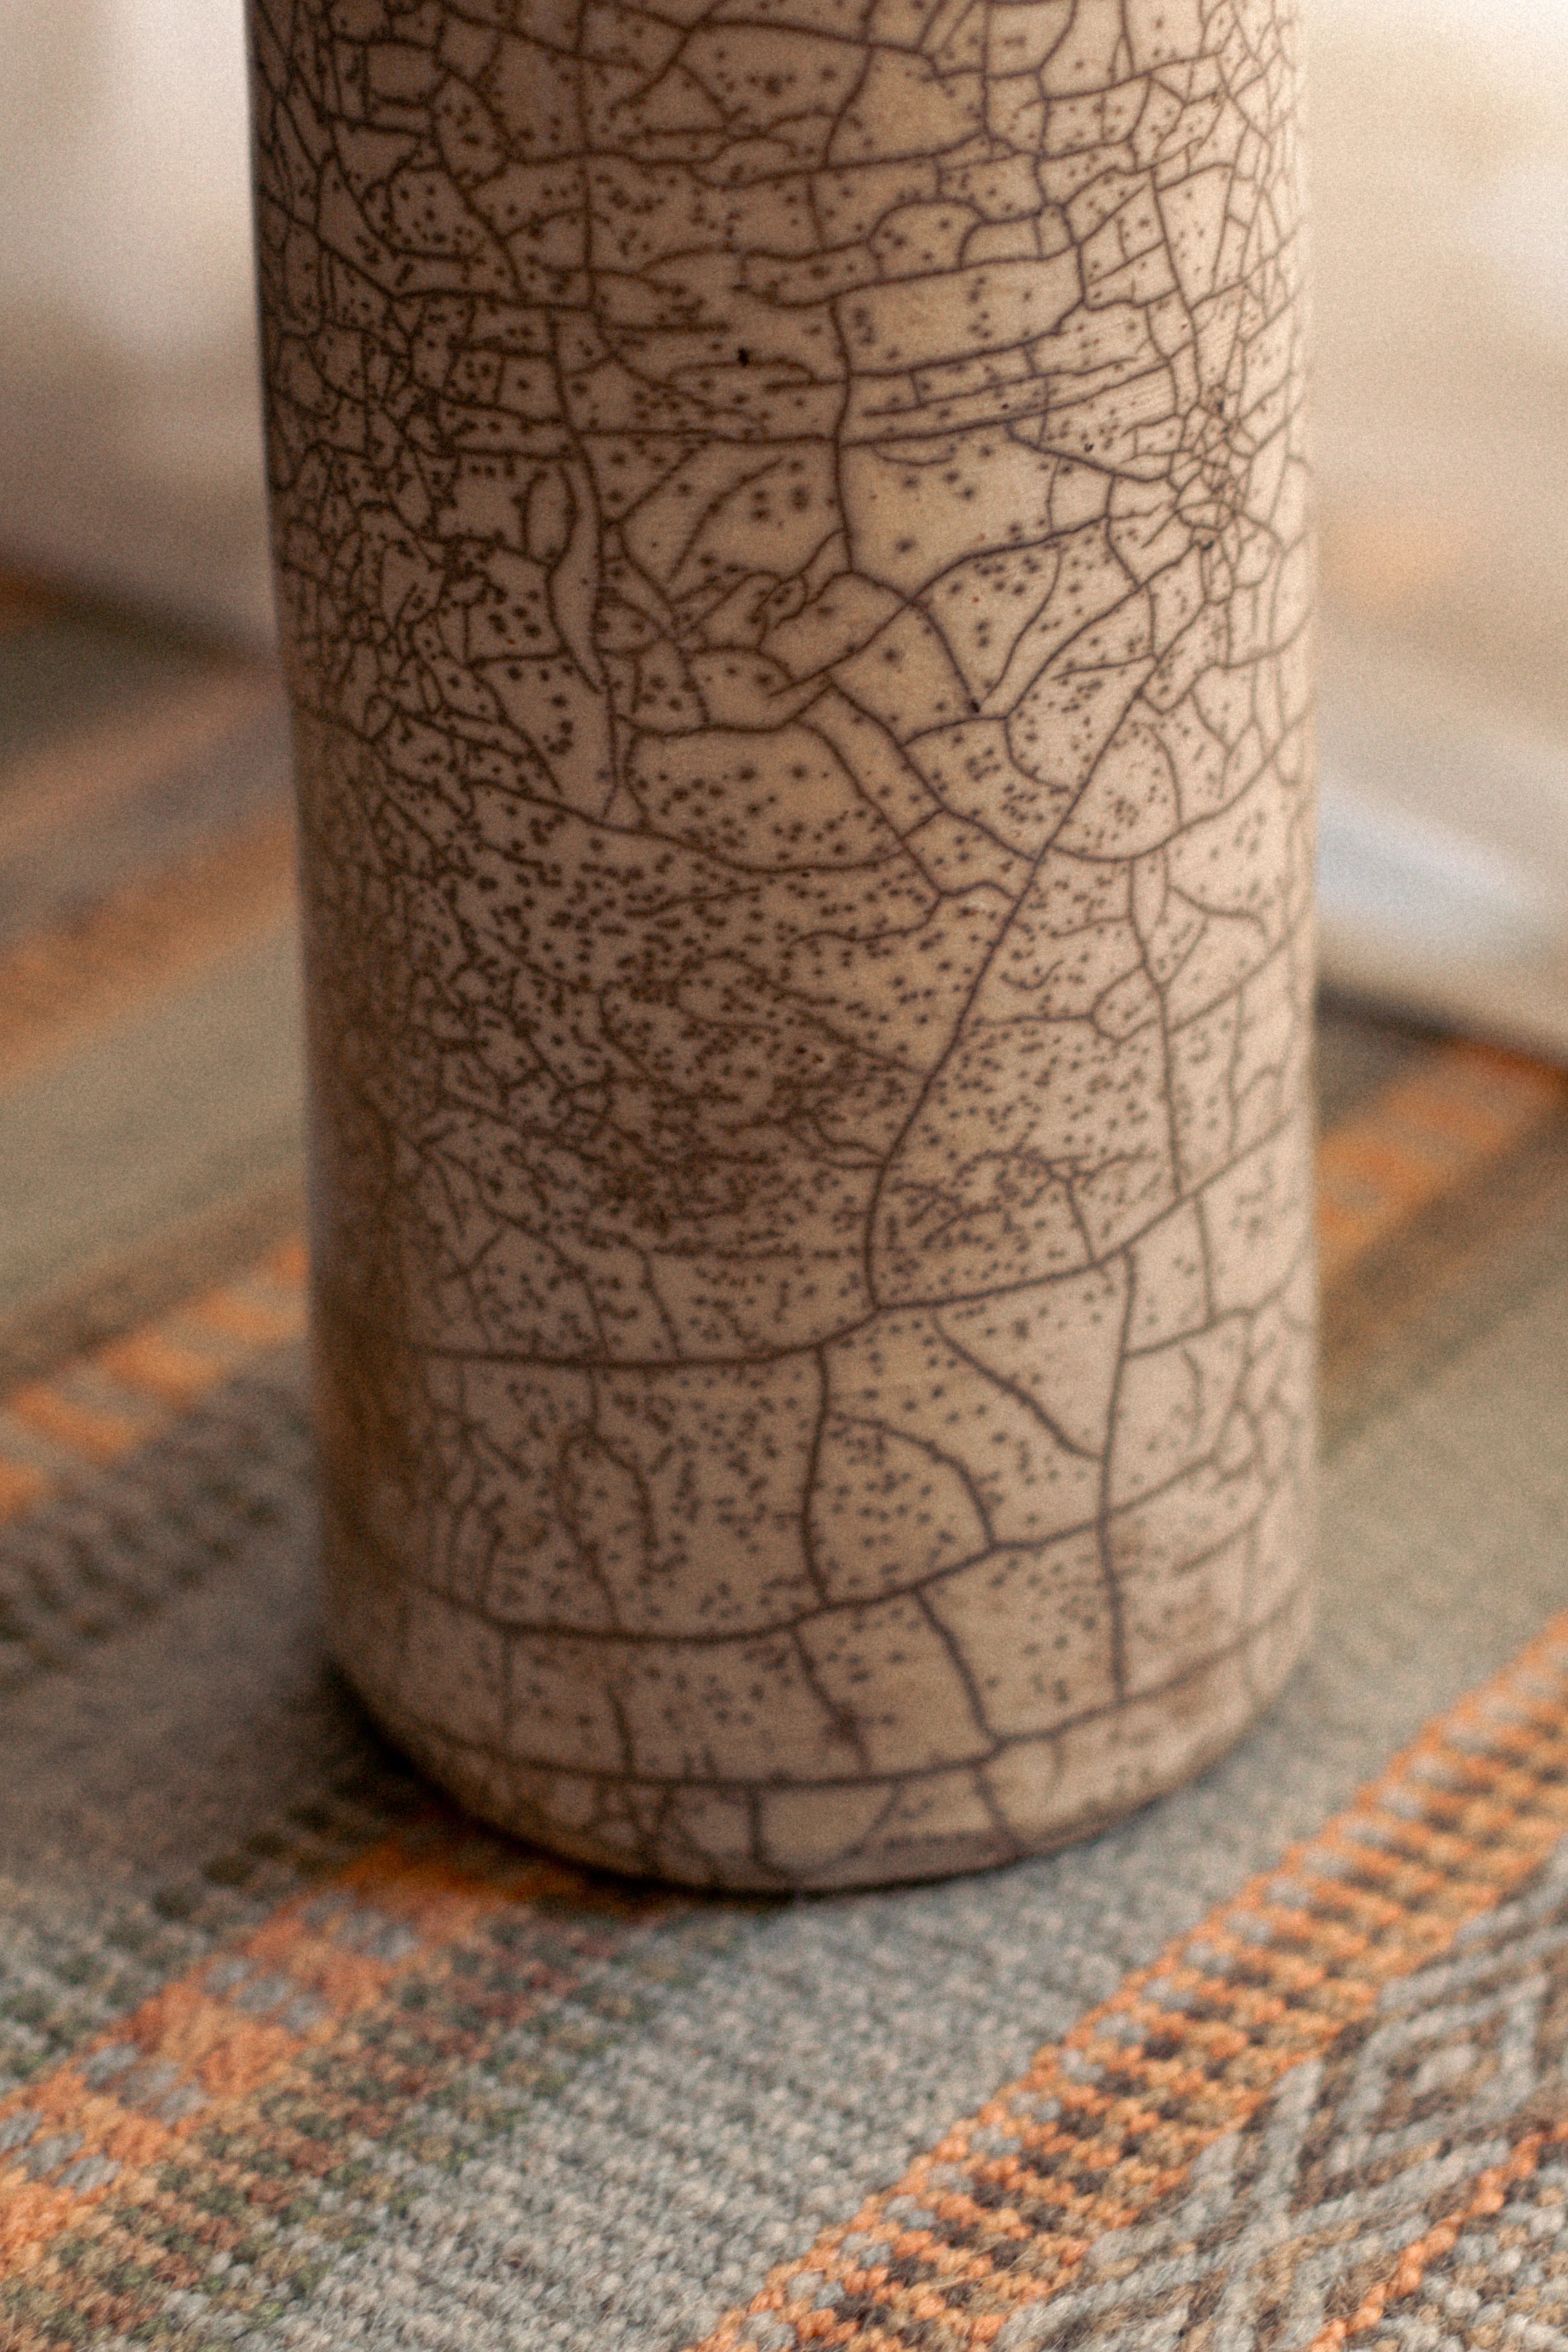 Zuhariya Clay Vase